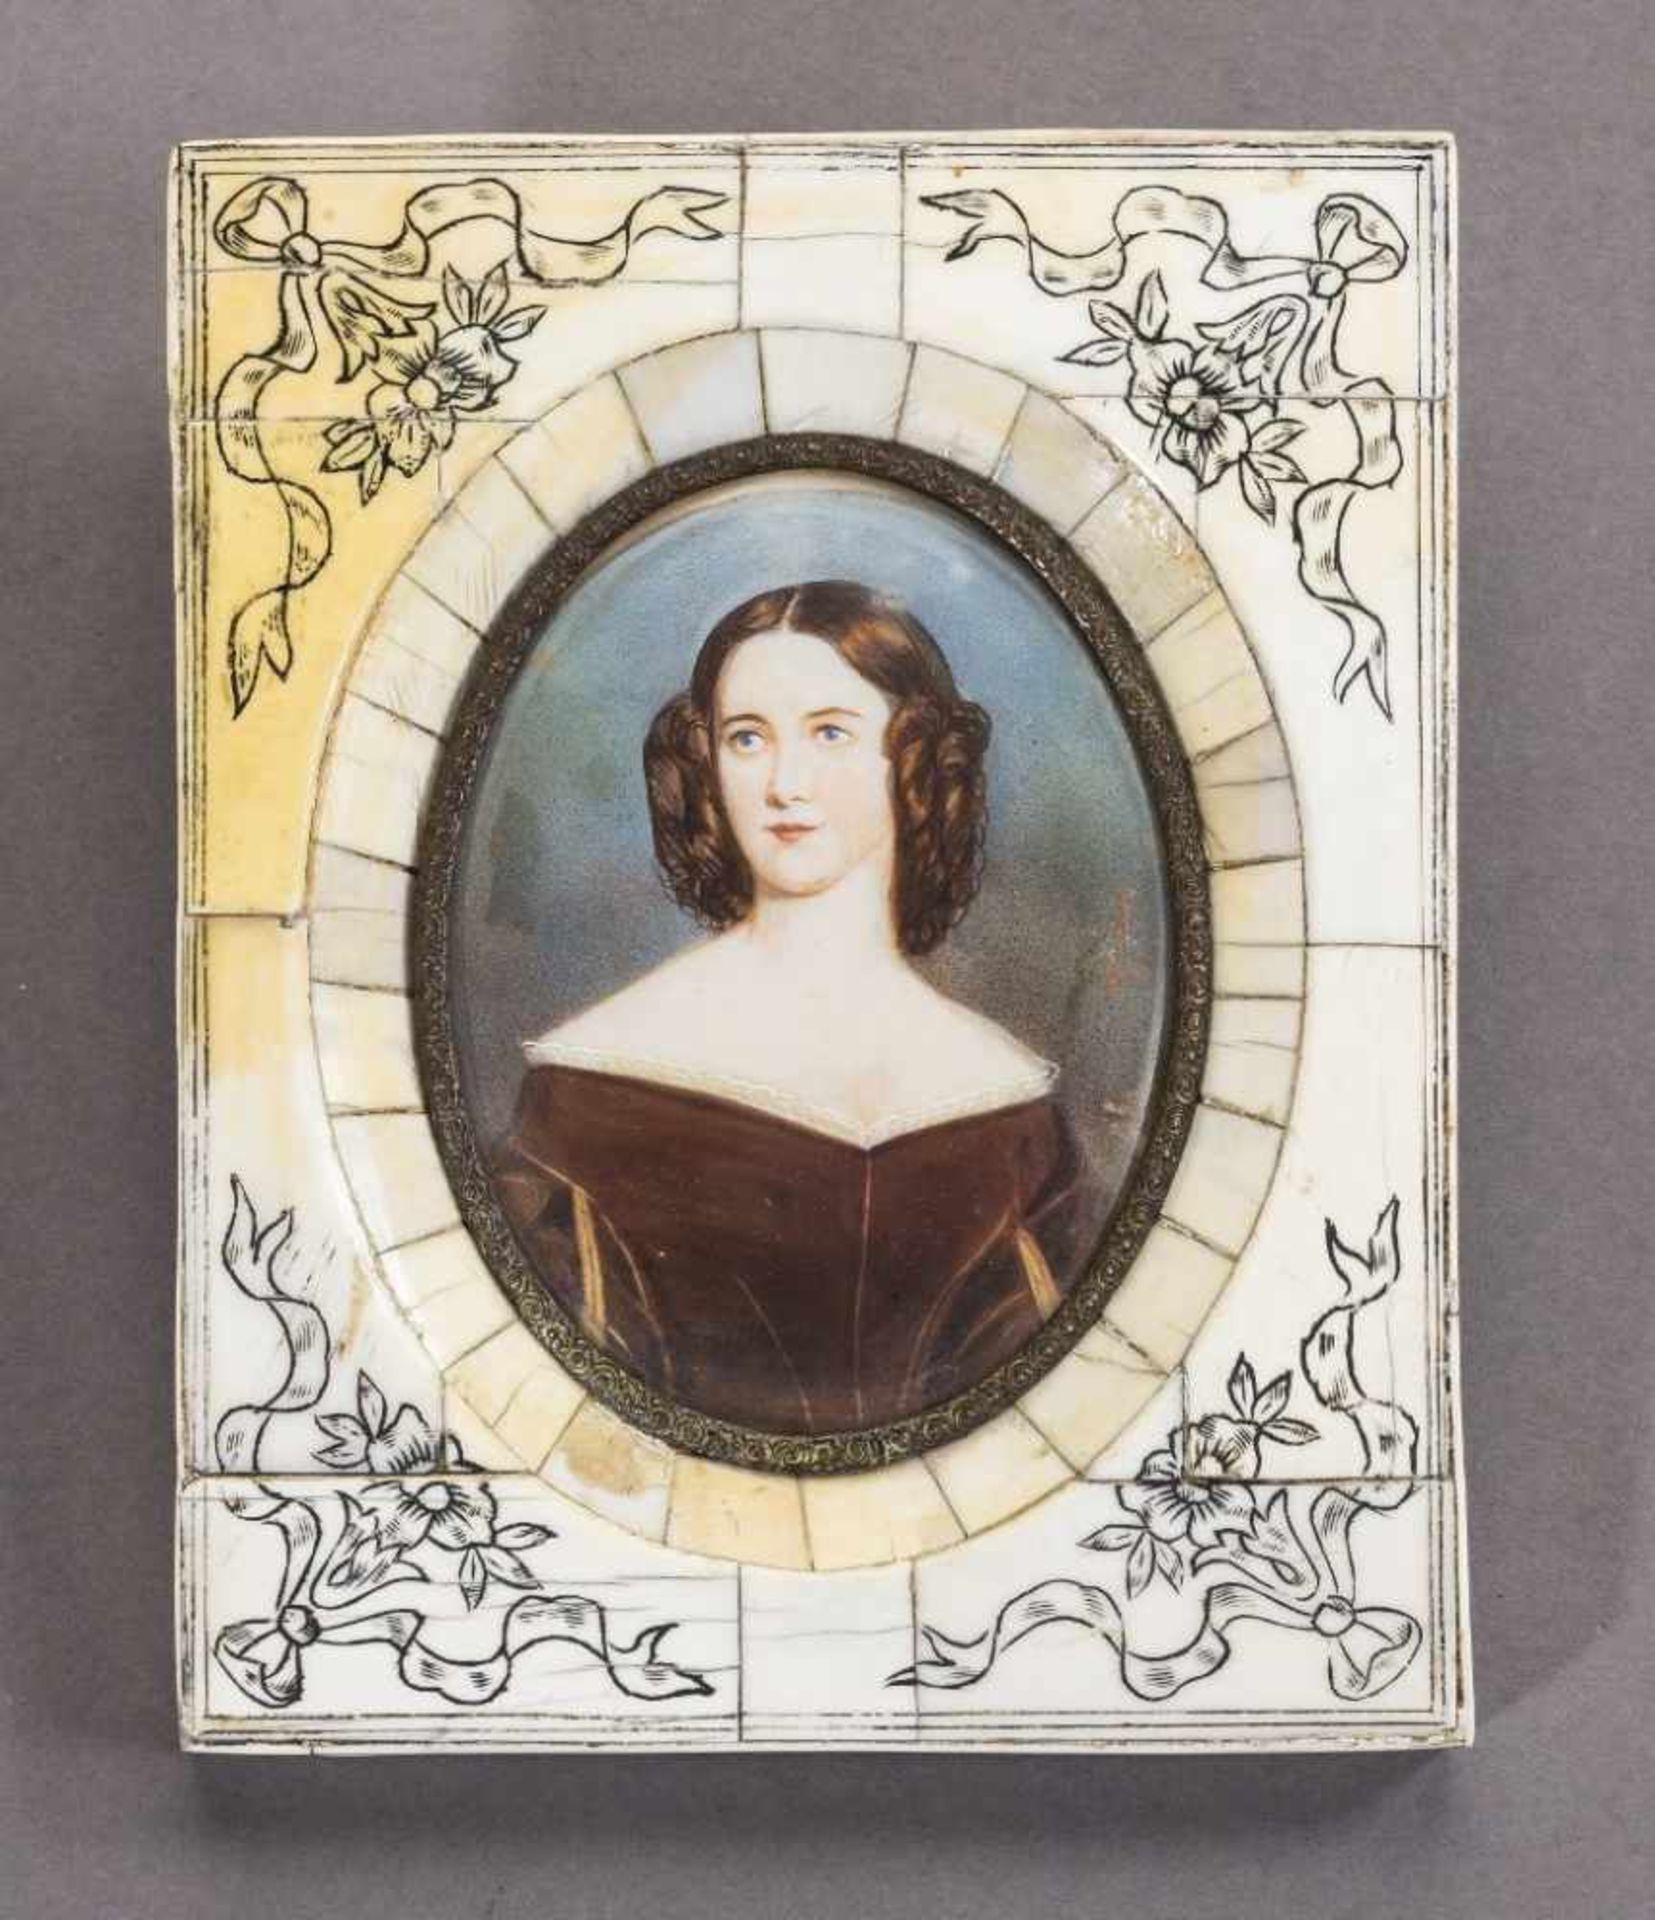 Caroline Lizius aus der Münchner Schönheitengalerie, nach Stieler. 1. H. 20. Jh. Oval, 8,5 x 6,5 cm.